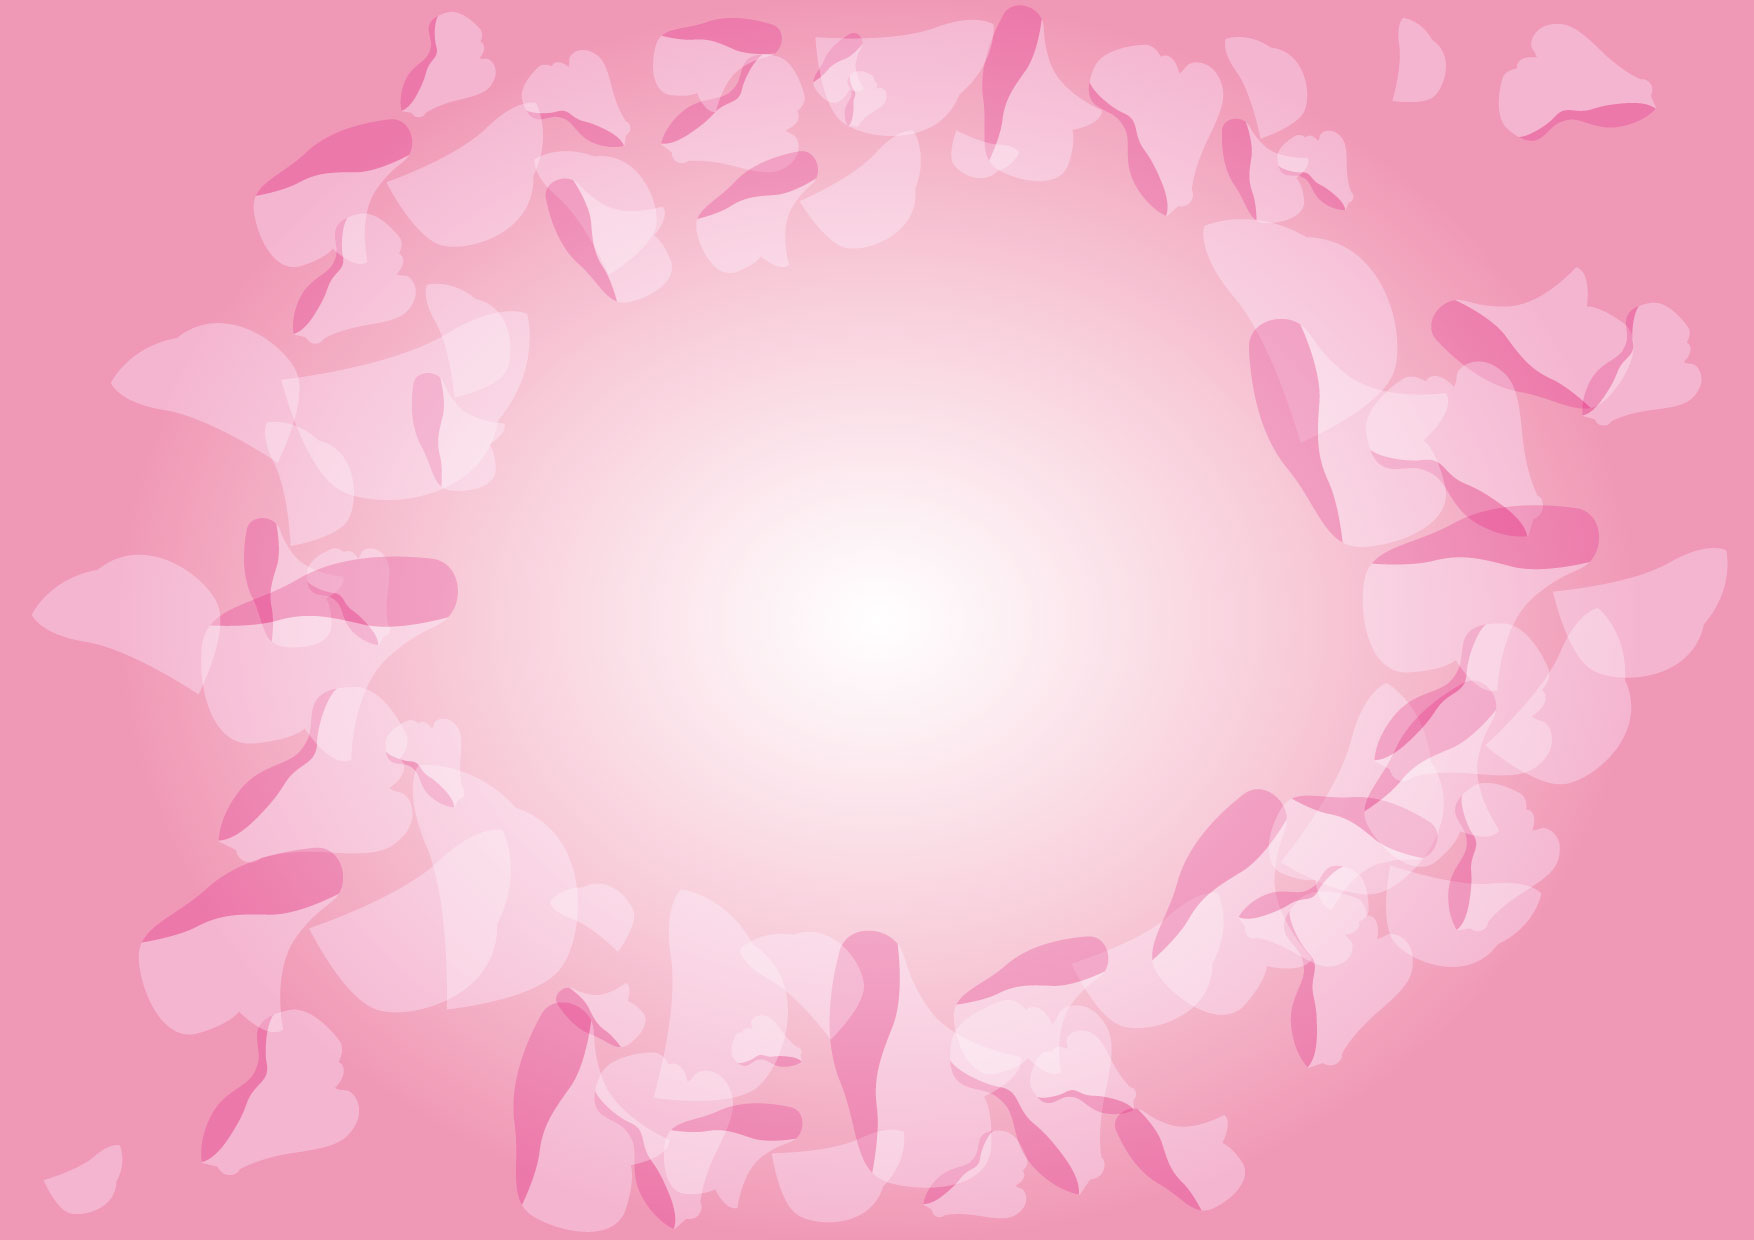 可愛いイラスト無料 背景 花びら ピンク Free Illustration Background Petals Pink 公式 イラスト 素材サイト イラストダウンロード